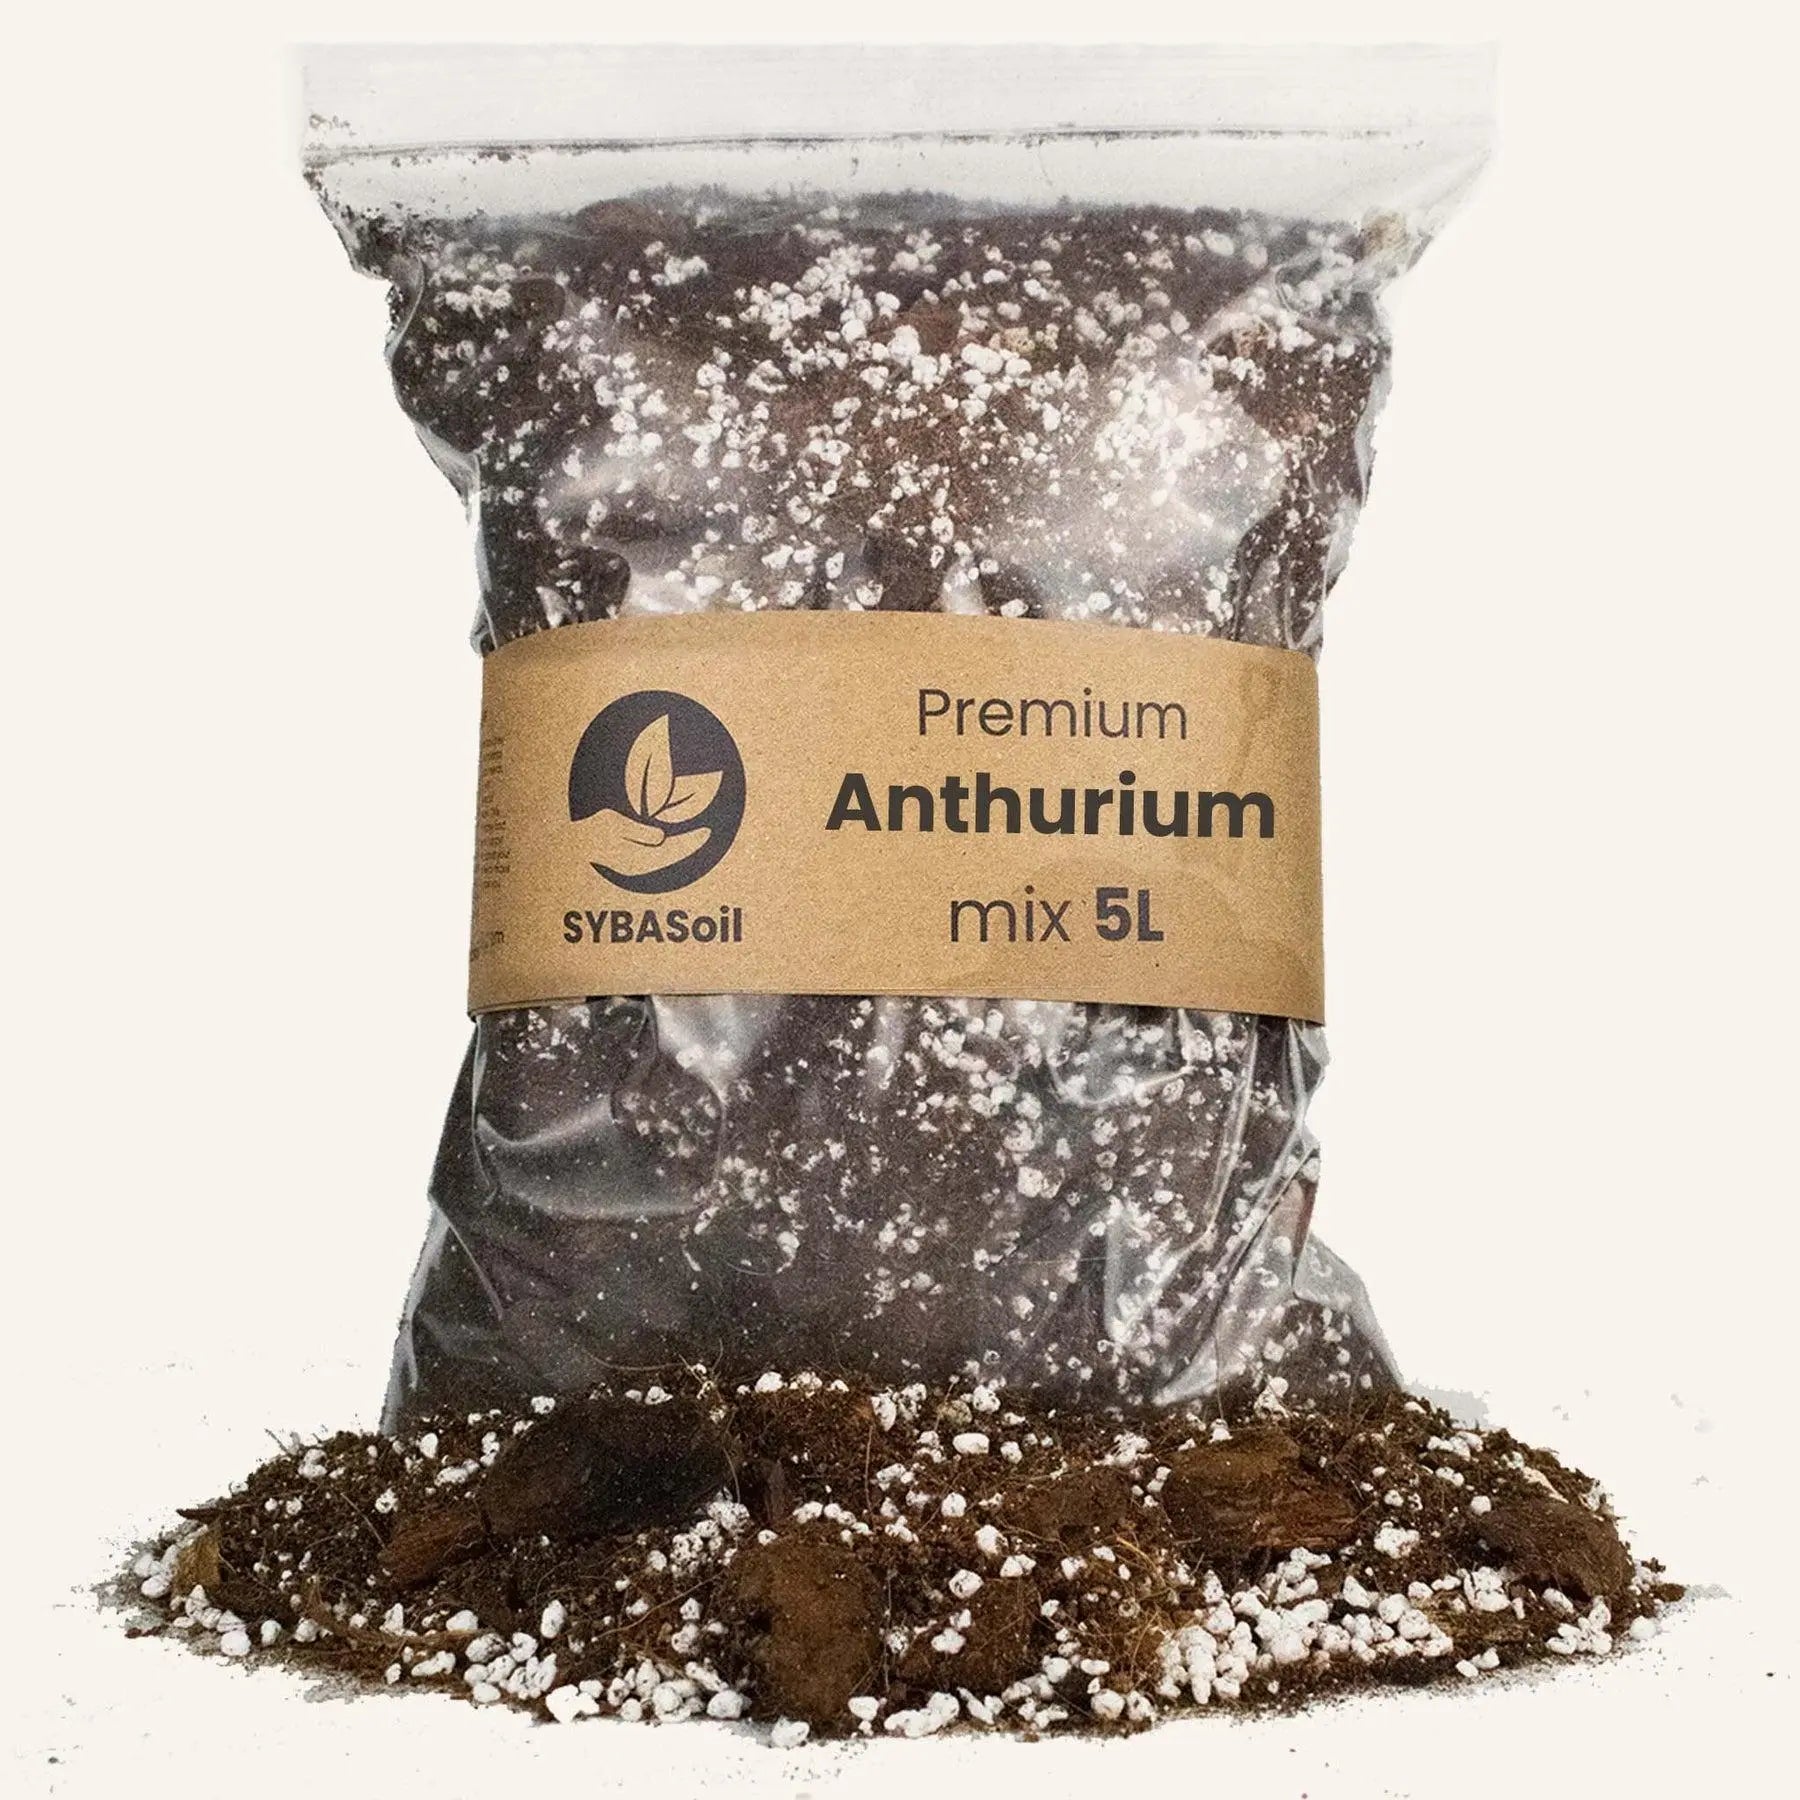 Anthurium mix 5L